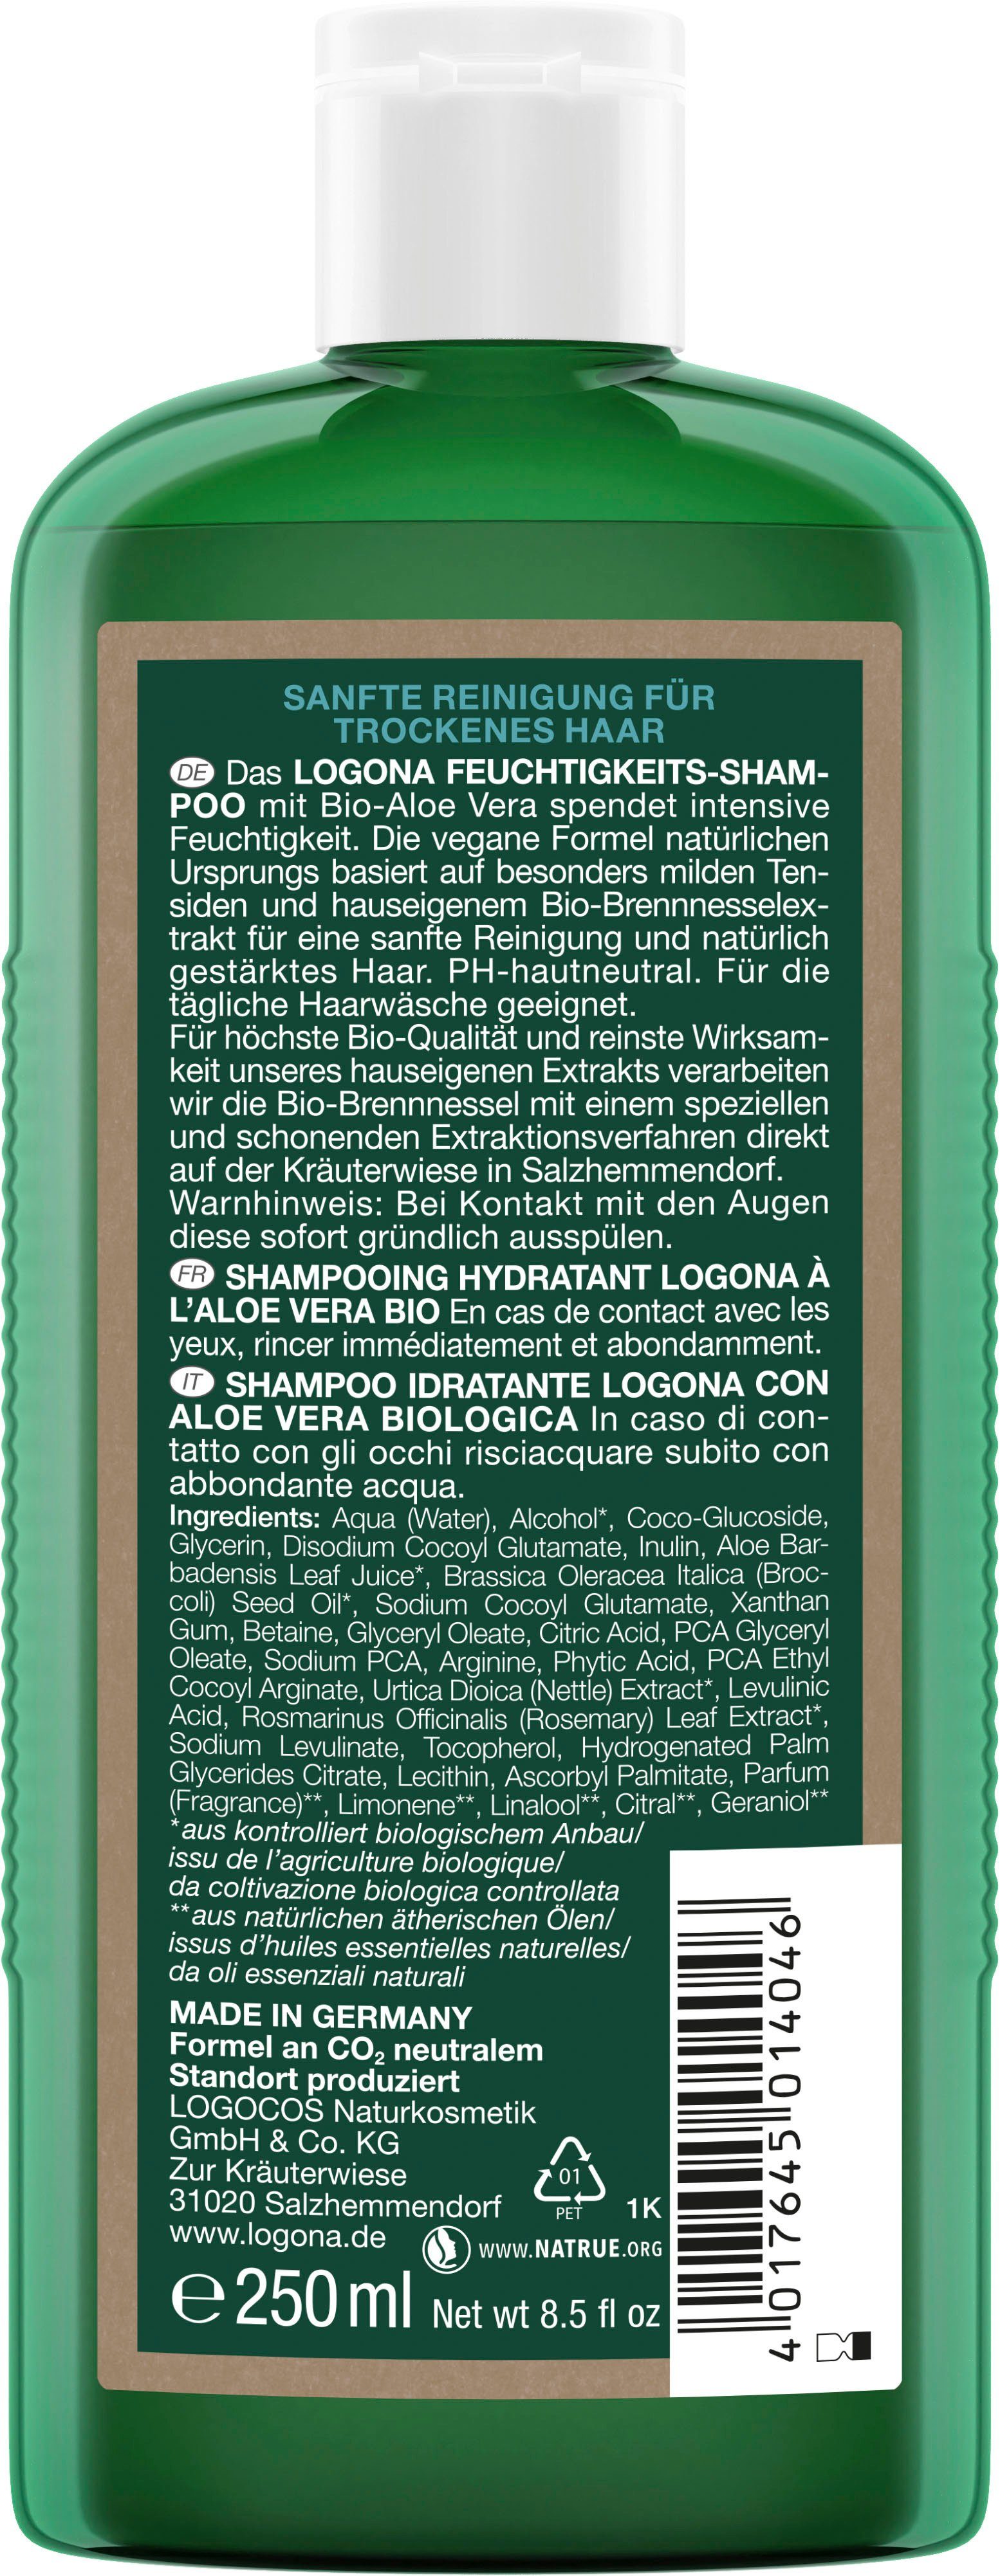 Haarshampoo Vera Bio-Aloe LOGONA Logona Feuchtigkeits-Shampoo